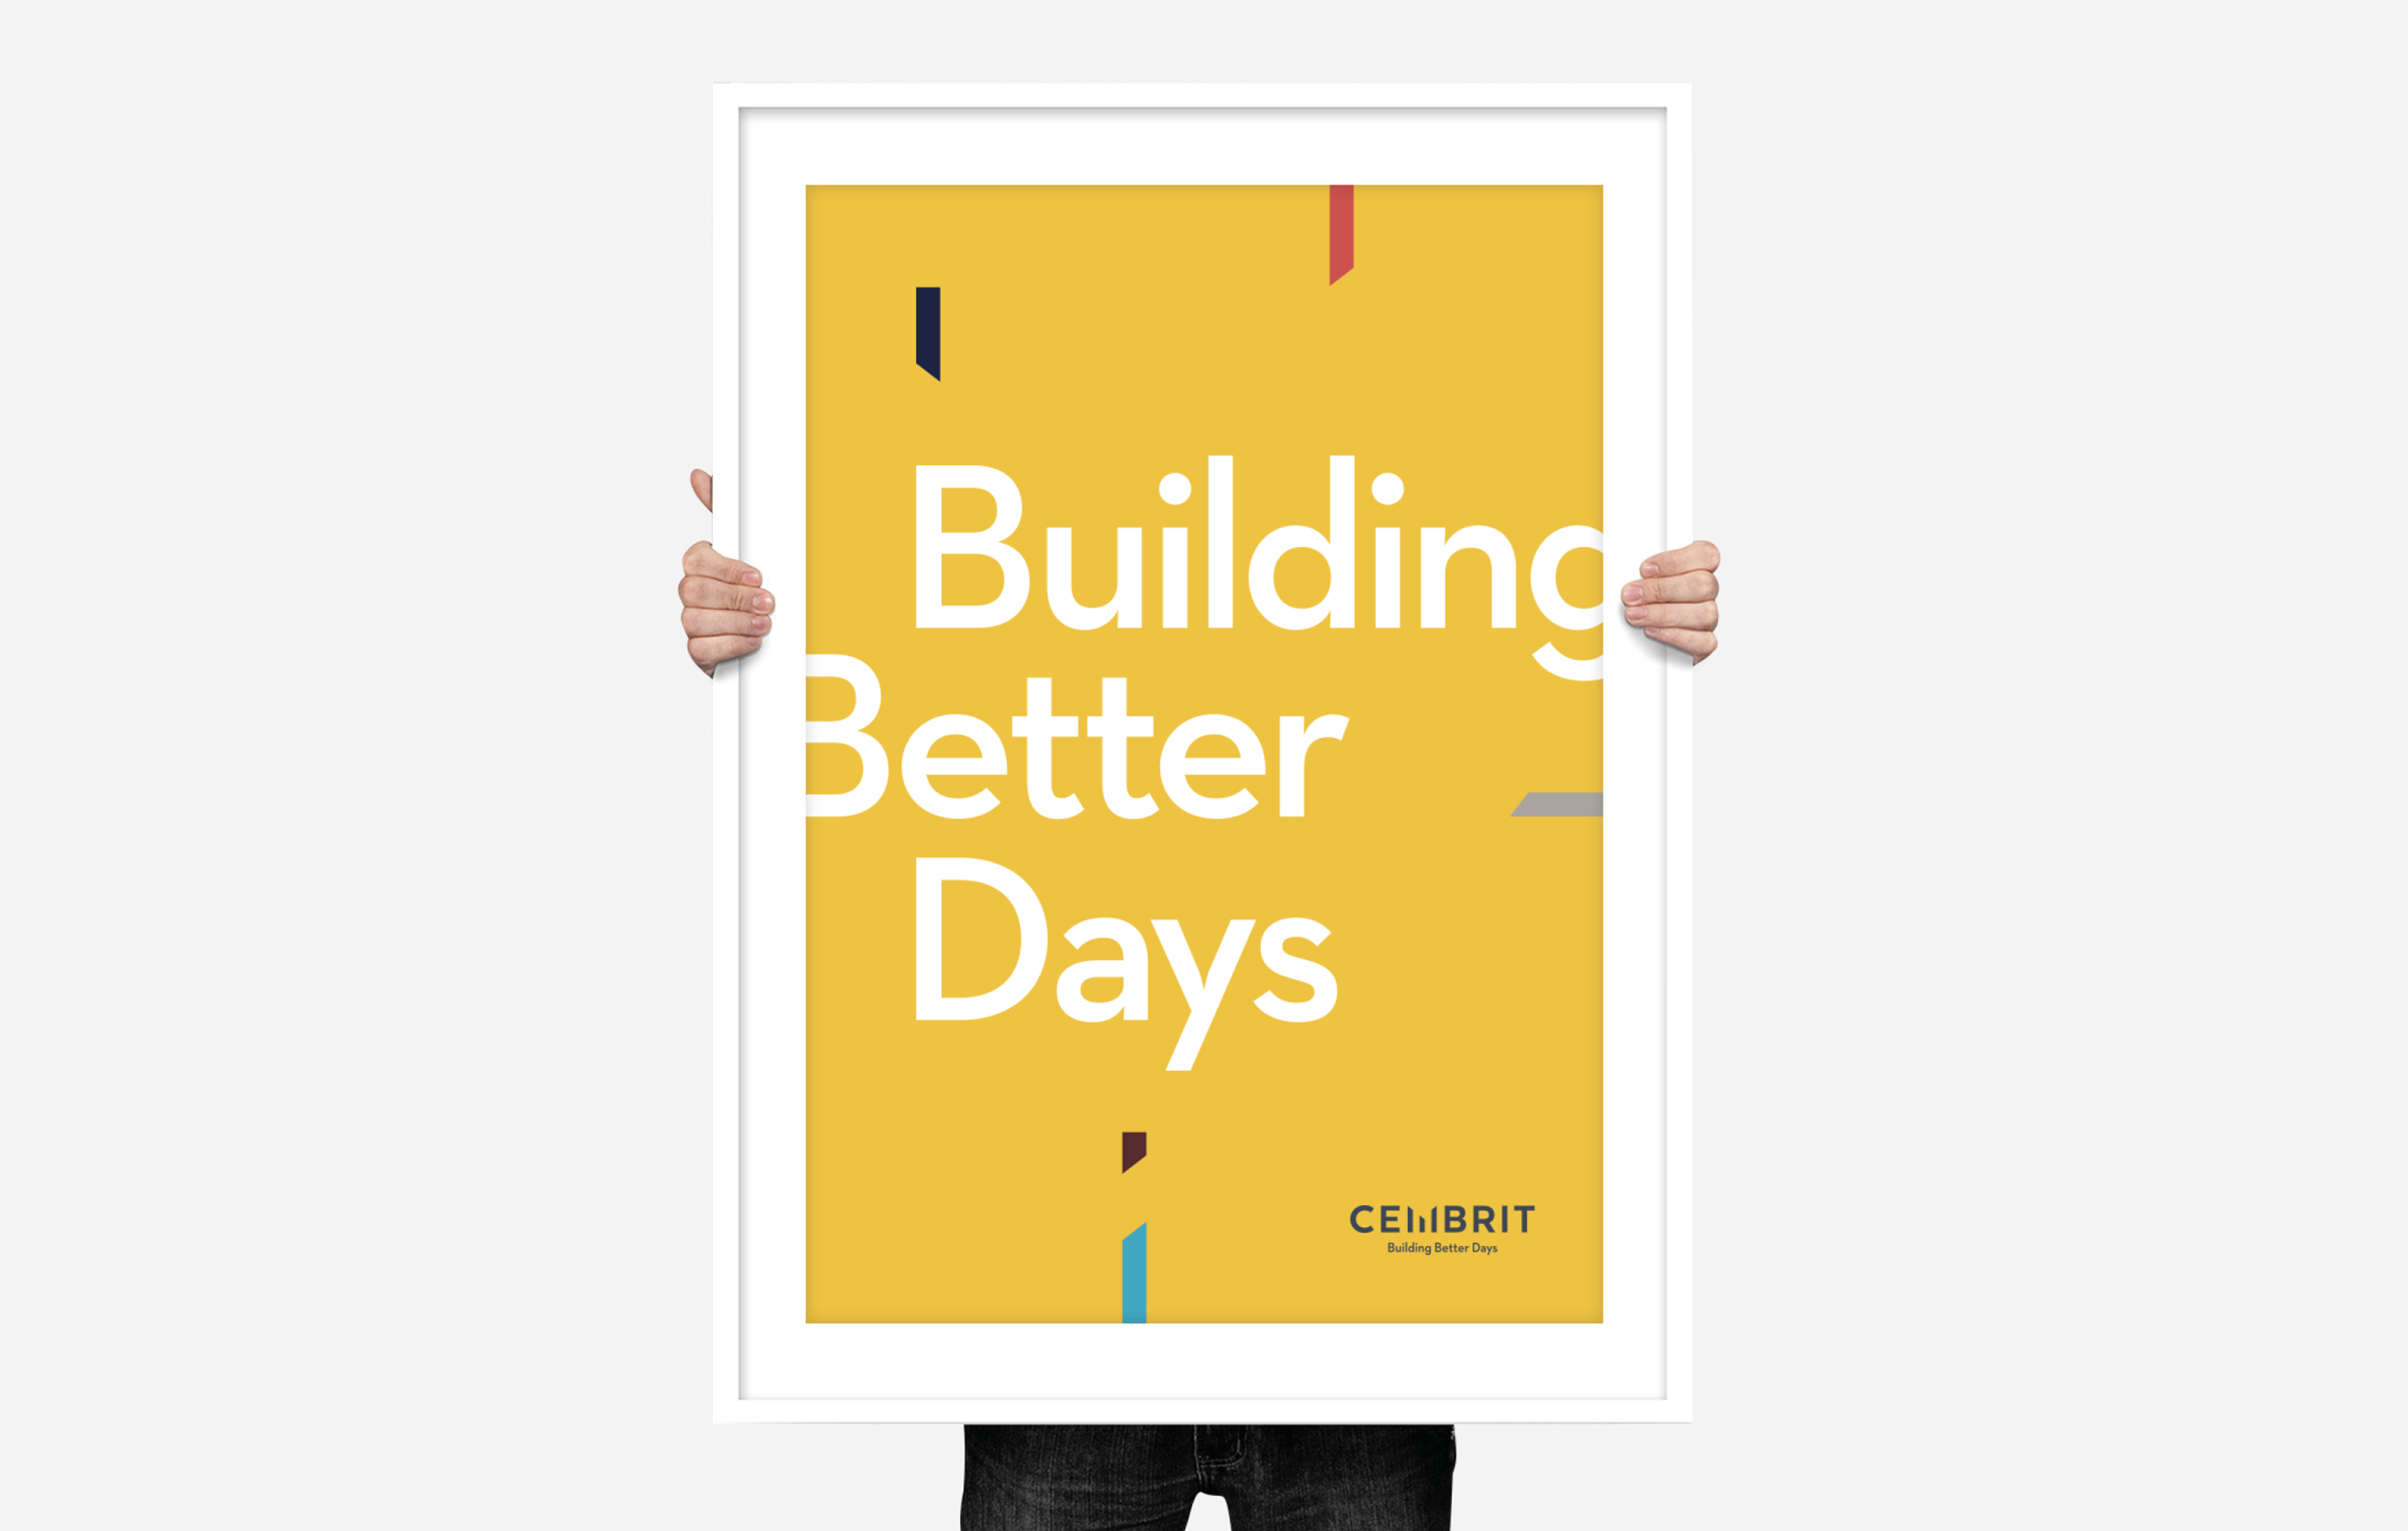 Cembrit-Case-Building-Better-Days-Clienti